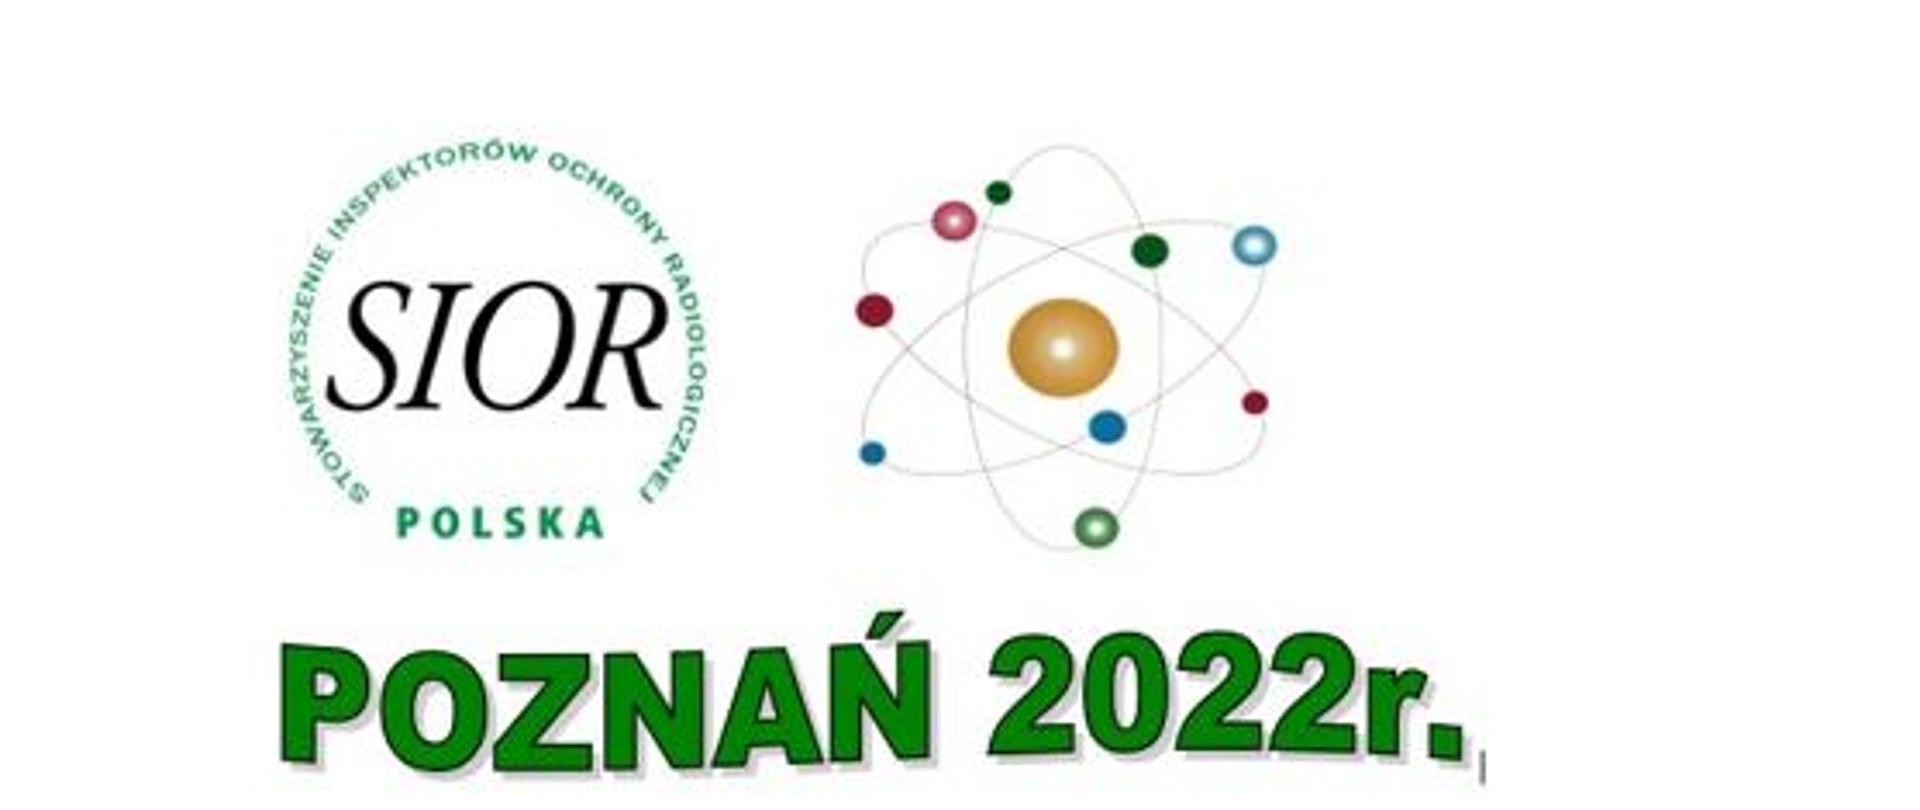 W dniach 9-10 kwietnia 2022 r. w Poznaniu odbyła się Konferencja Inspektorów Ochrony Radiologicznej